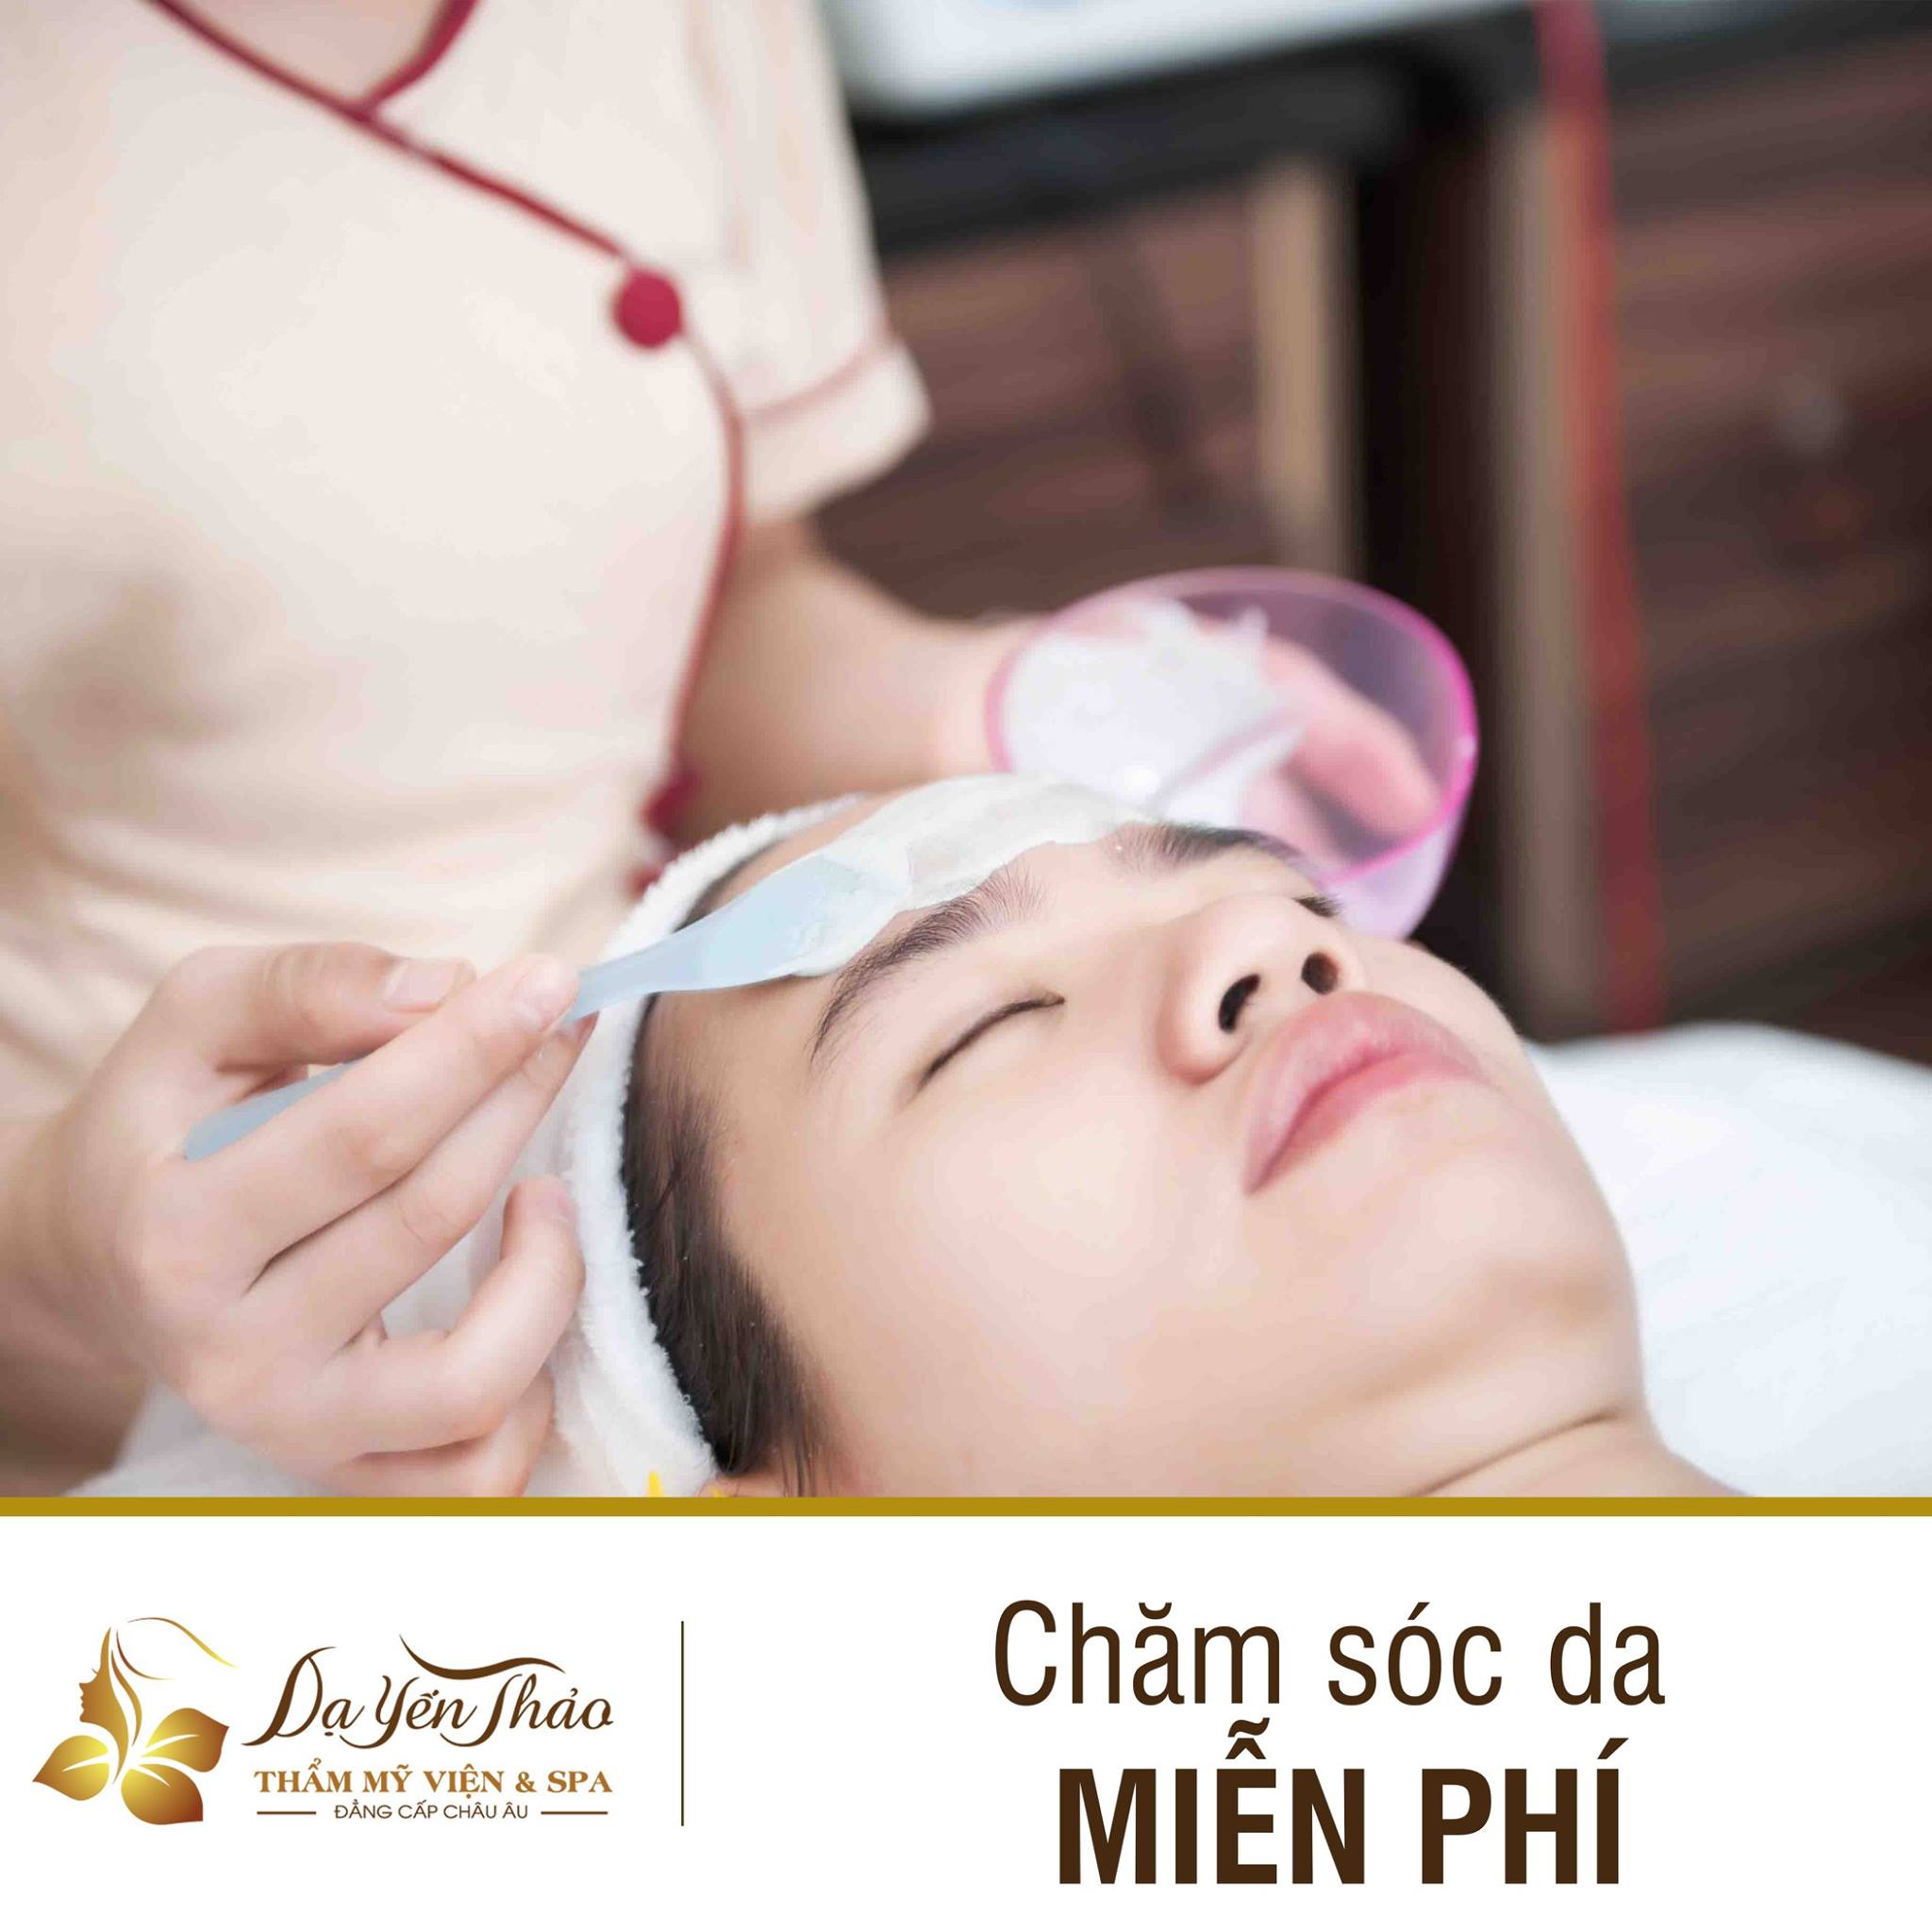 Top 8 Spa chăm sóc da mặt tốt ở Hà Nội được chị em lựa chọn nhiều nhất -  Dạ Yến Thảo Spa